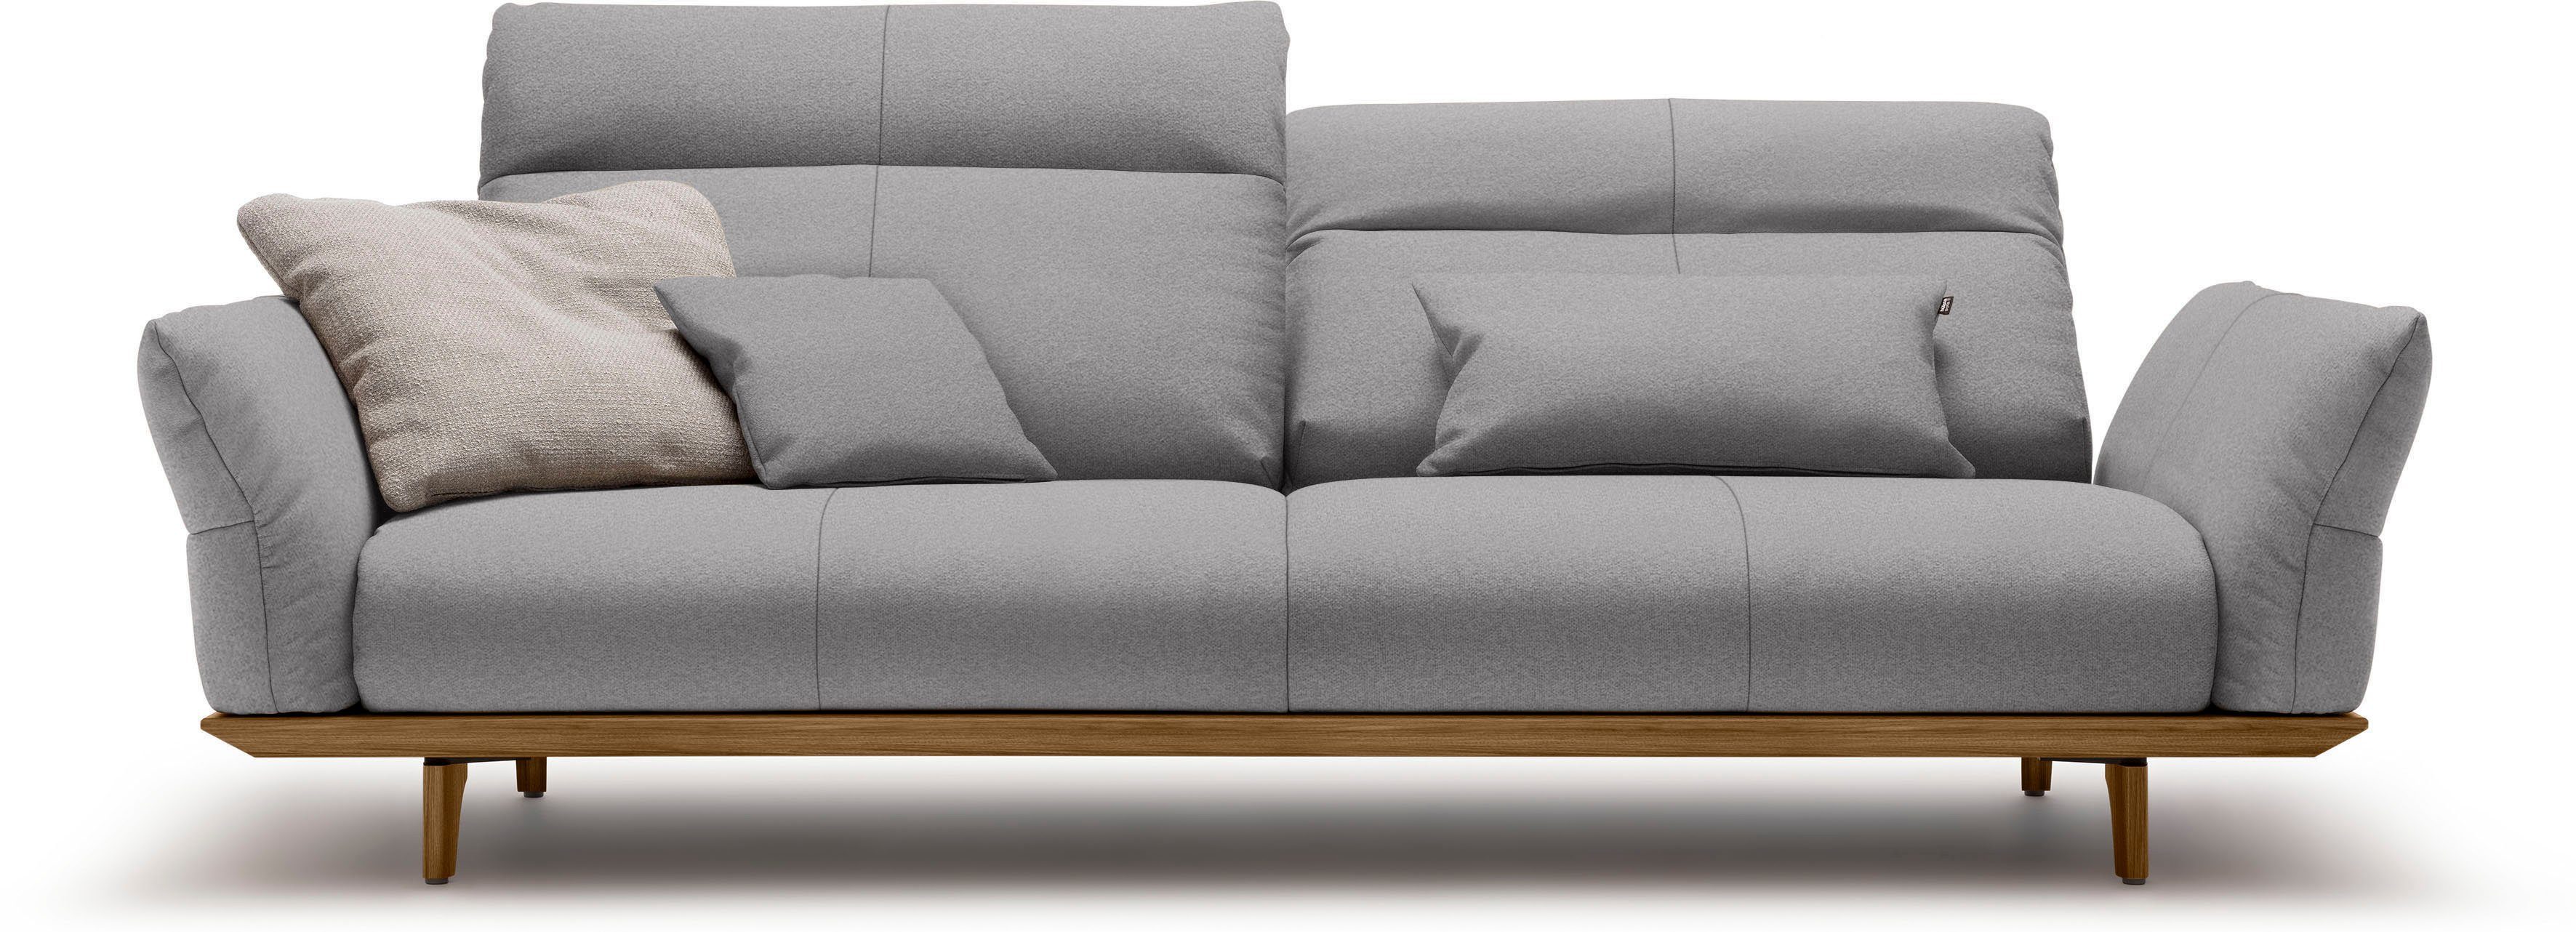 hülsta sofa 3,5-Sitzer hs.460, Sockel und Füße in Nussbaum, Breite 228 cm